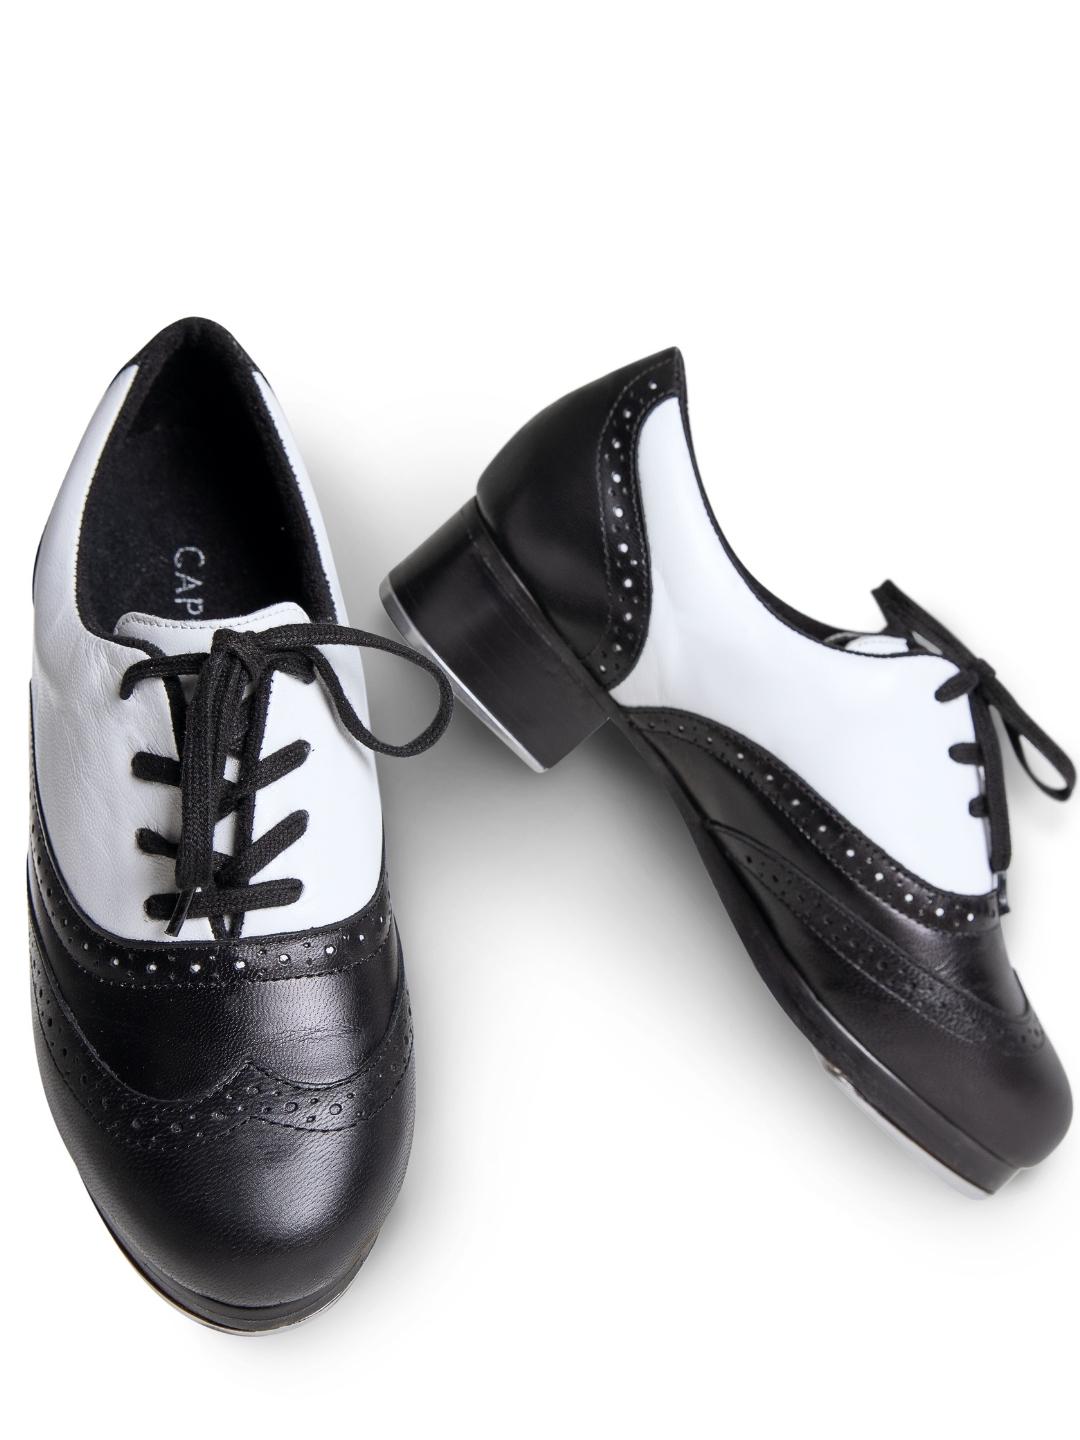 Roxy Tap - Sapato Preto e Branco